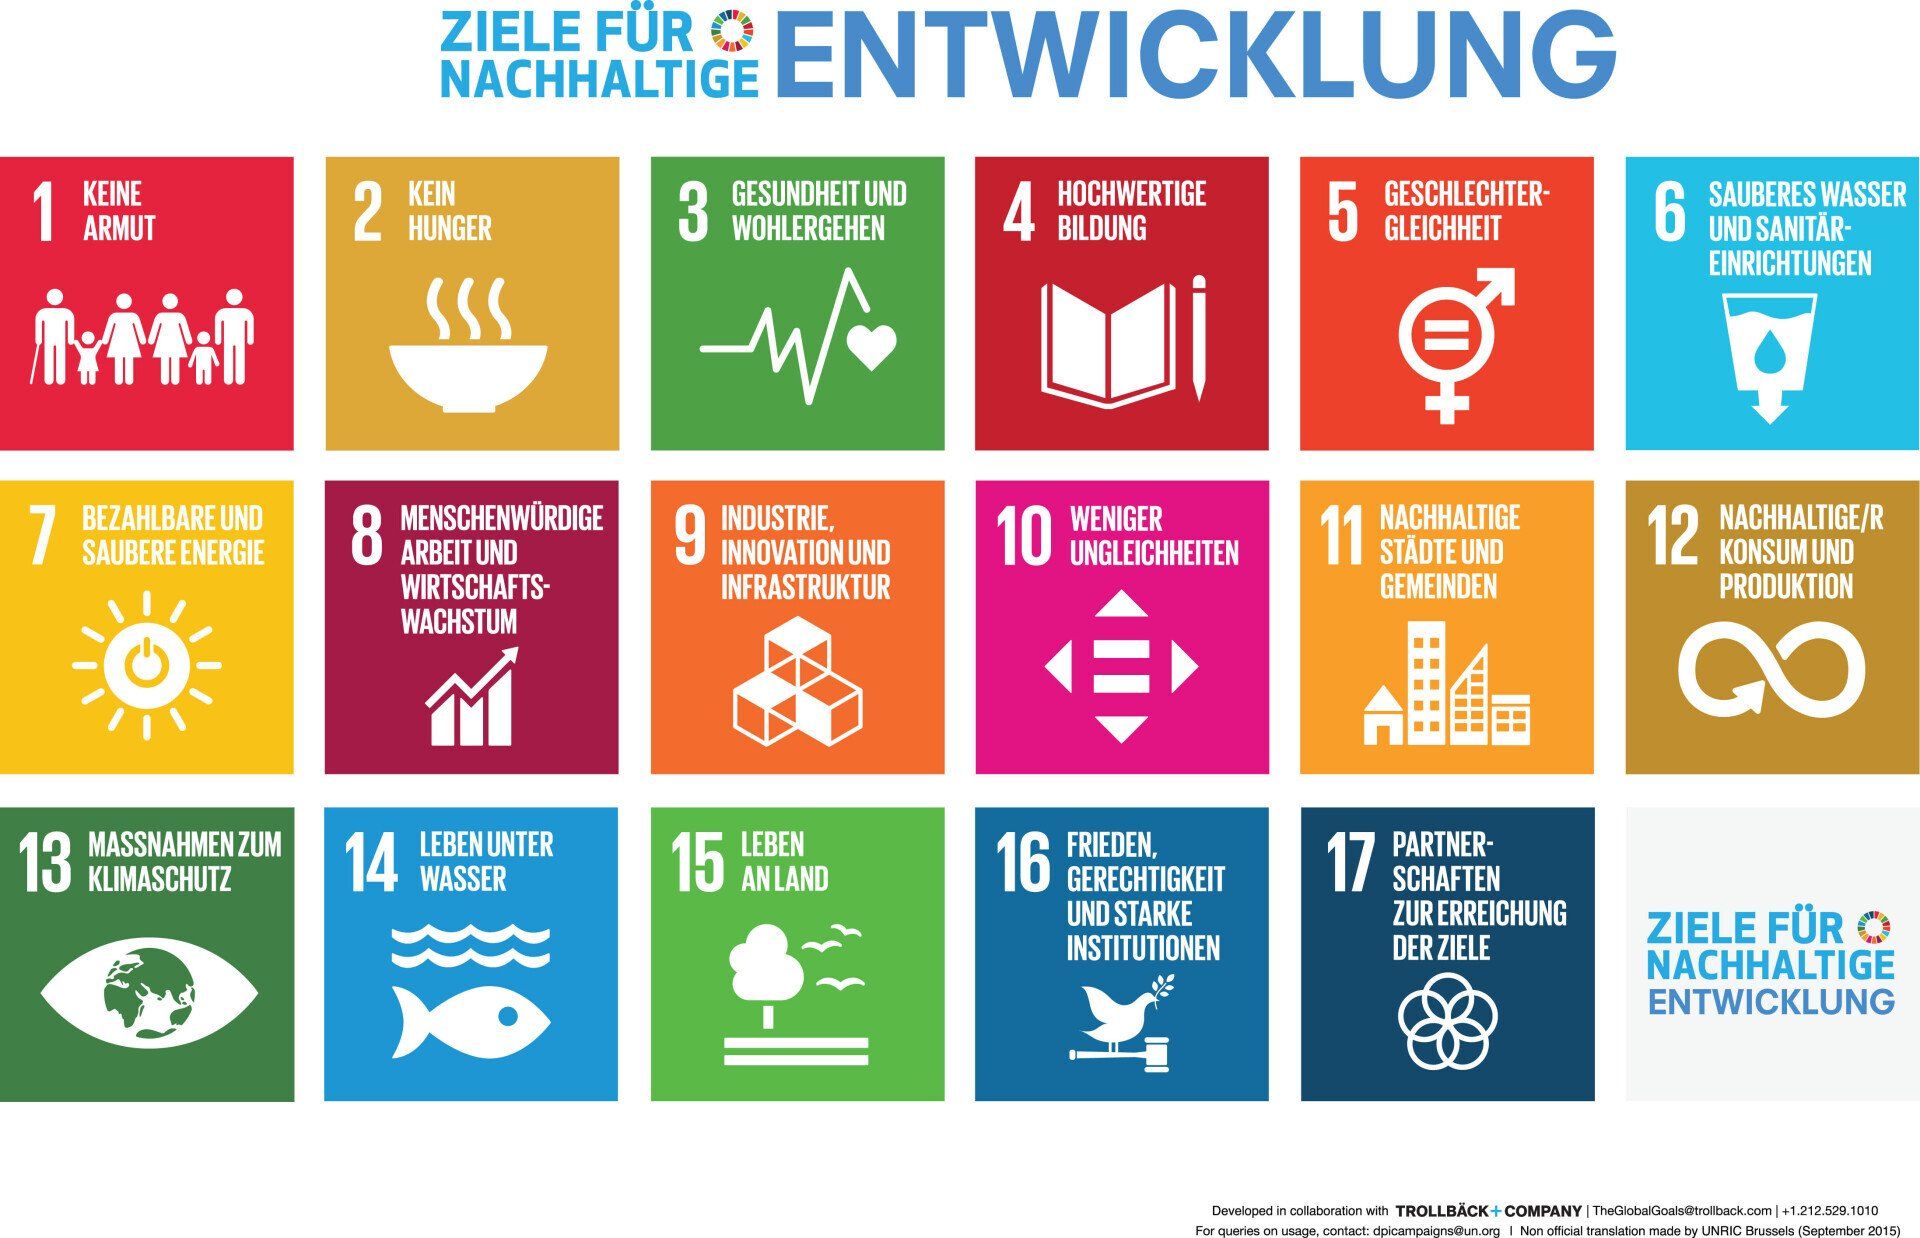 Bunte nummerierte Kacheln mit Texten und Symbolen verdeutlichen die 17 Ziele für Nachhaltige Entwicklung